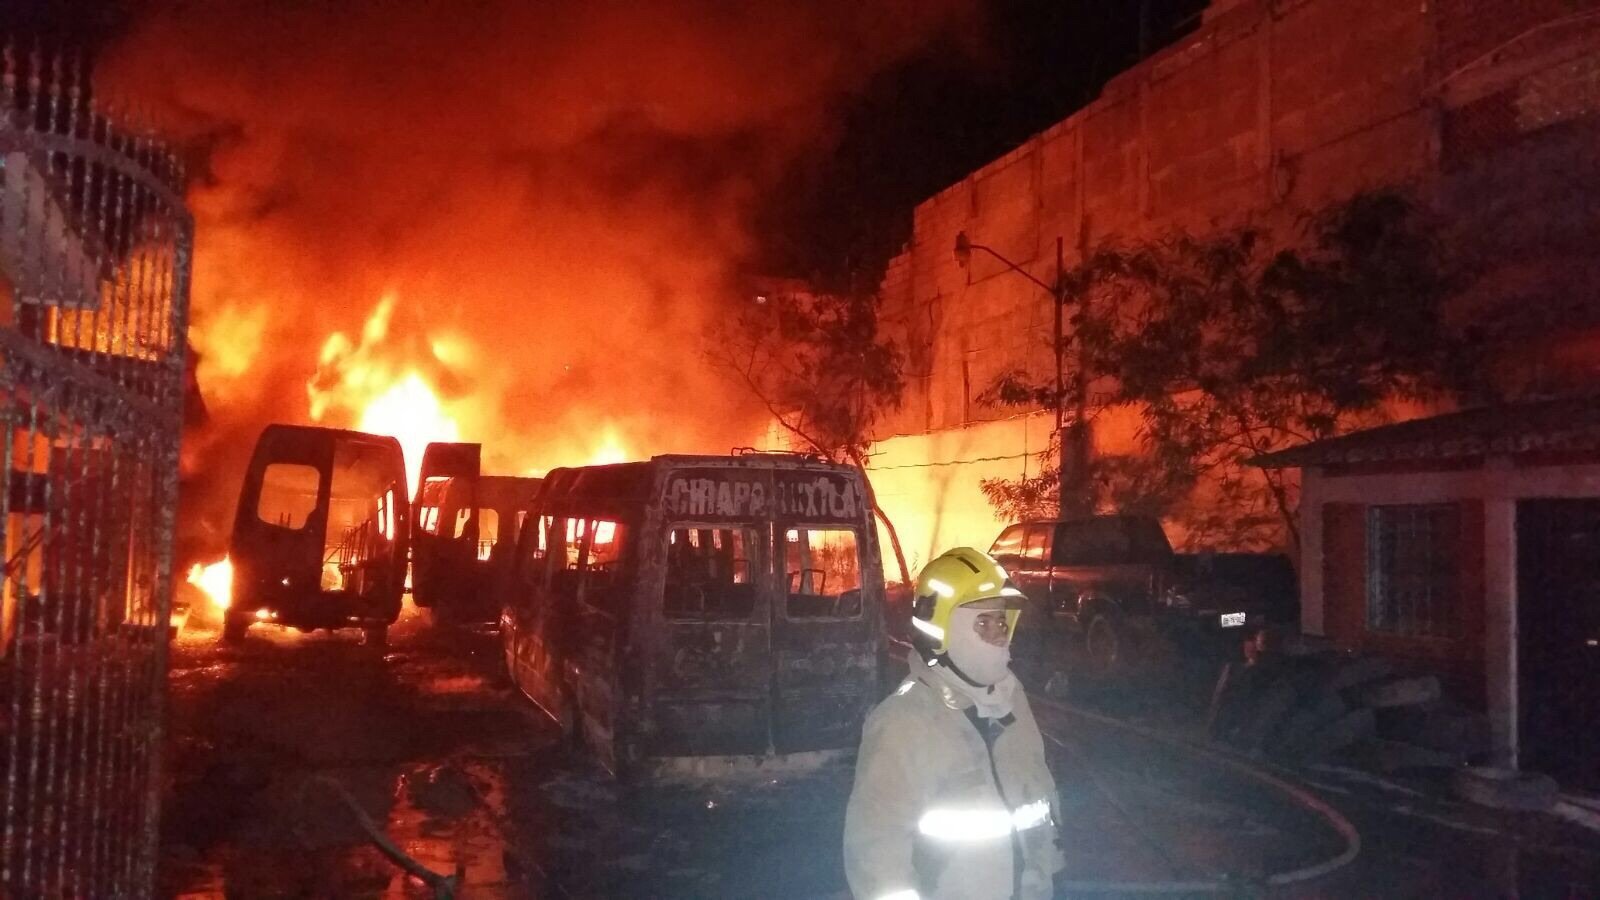 Ven corto circuito en incendio de vehículos en Chiapas